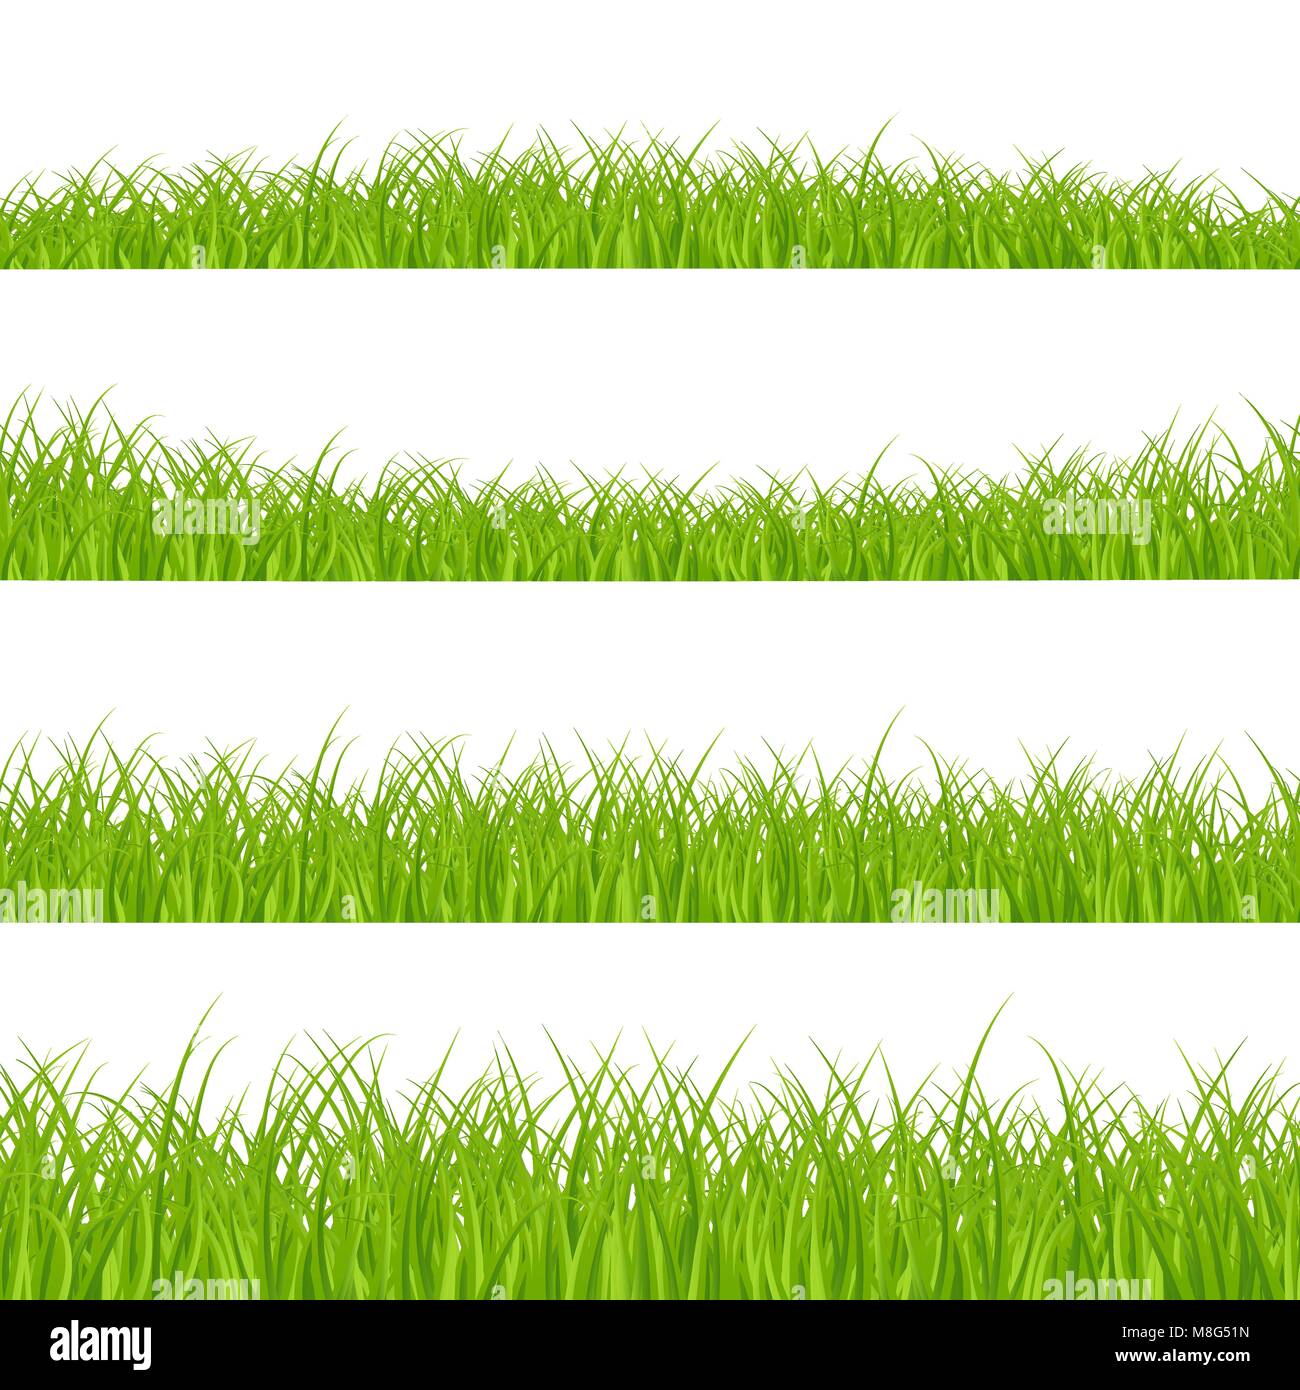 Gras Grenzen gesetzt. Gras Anlage Panorama. Gras Grenze oder Rahmen. Vector Illustration auf weißem Hintergrund Stock Vektor